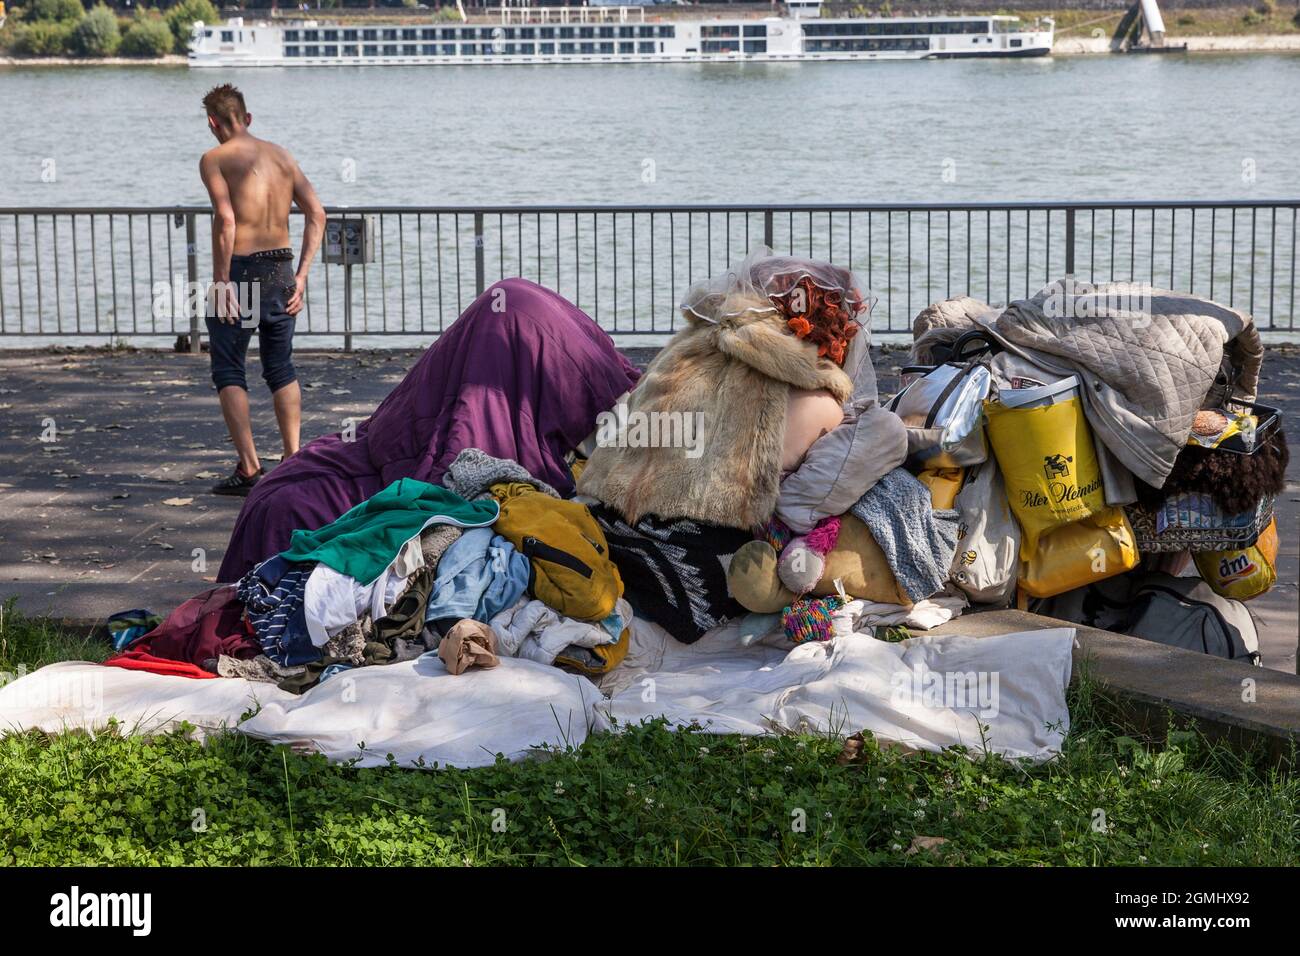 Obdachlose mit ihren Besitztümern am Rheinufer, Köln, Deutschland. Ein Mann ohne Hemd, eine Frau hockt mit einem Pelzumhang auf ihrer Tasche Stockfoto